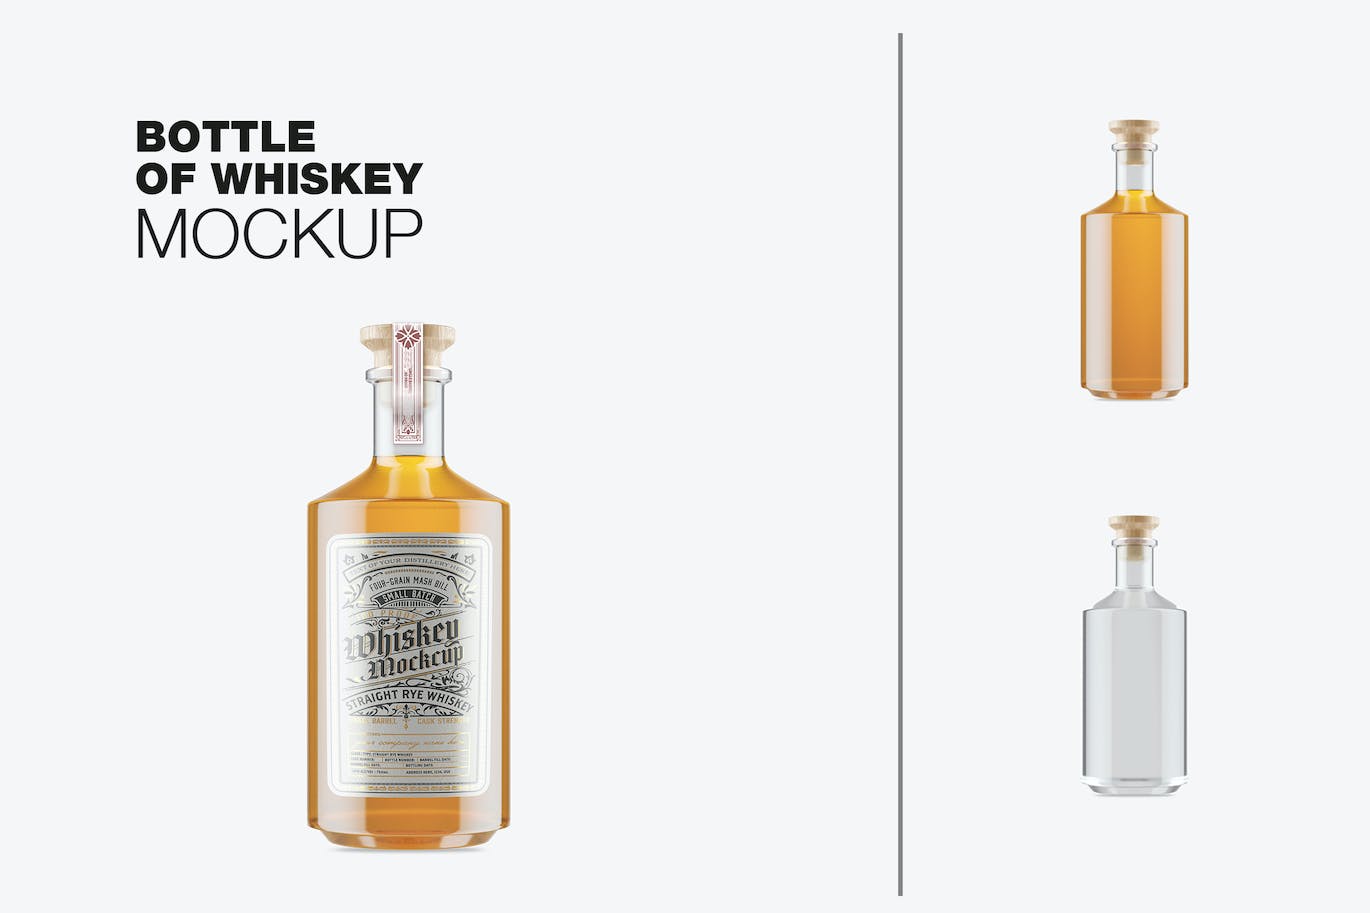 威士忌酒玻璃瓶包装设计样机 Pack Whiskey Liquor Glass Bottle Mockup 样机素材 第1张